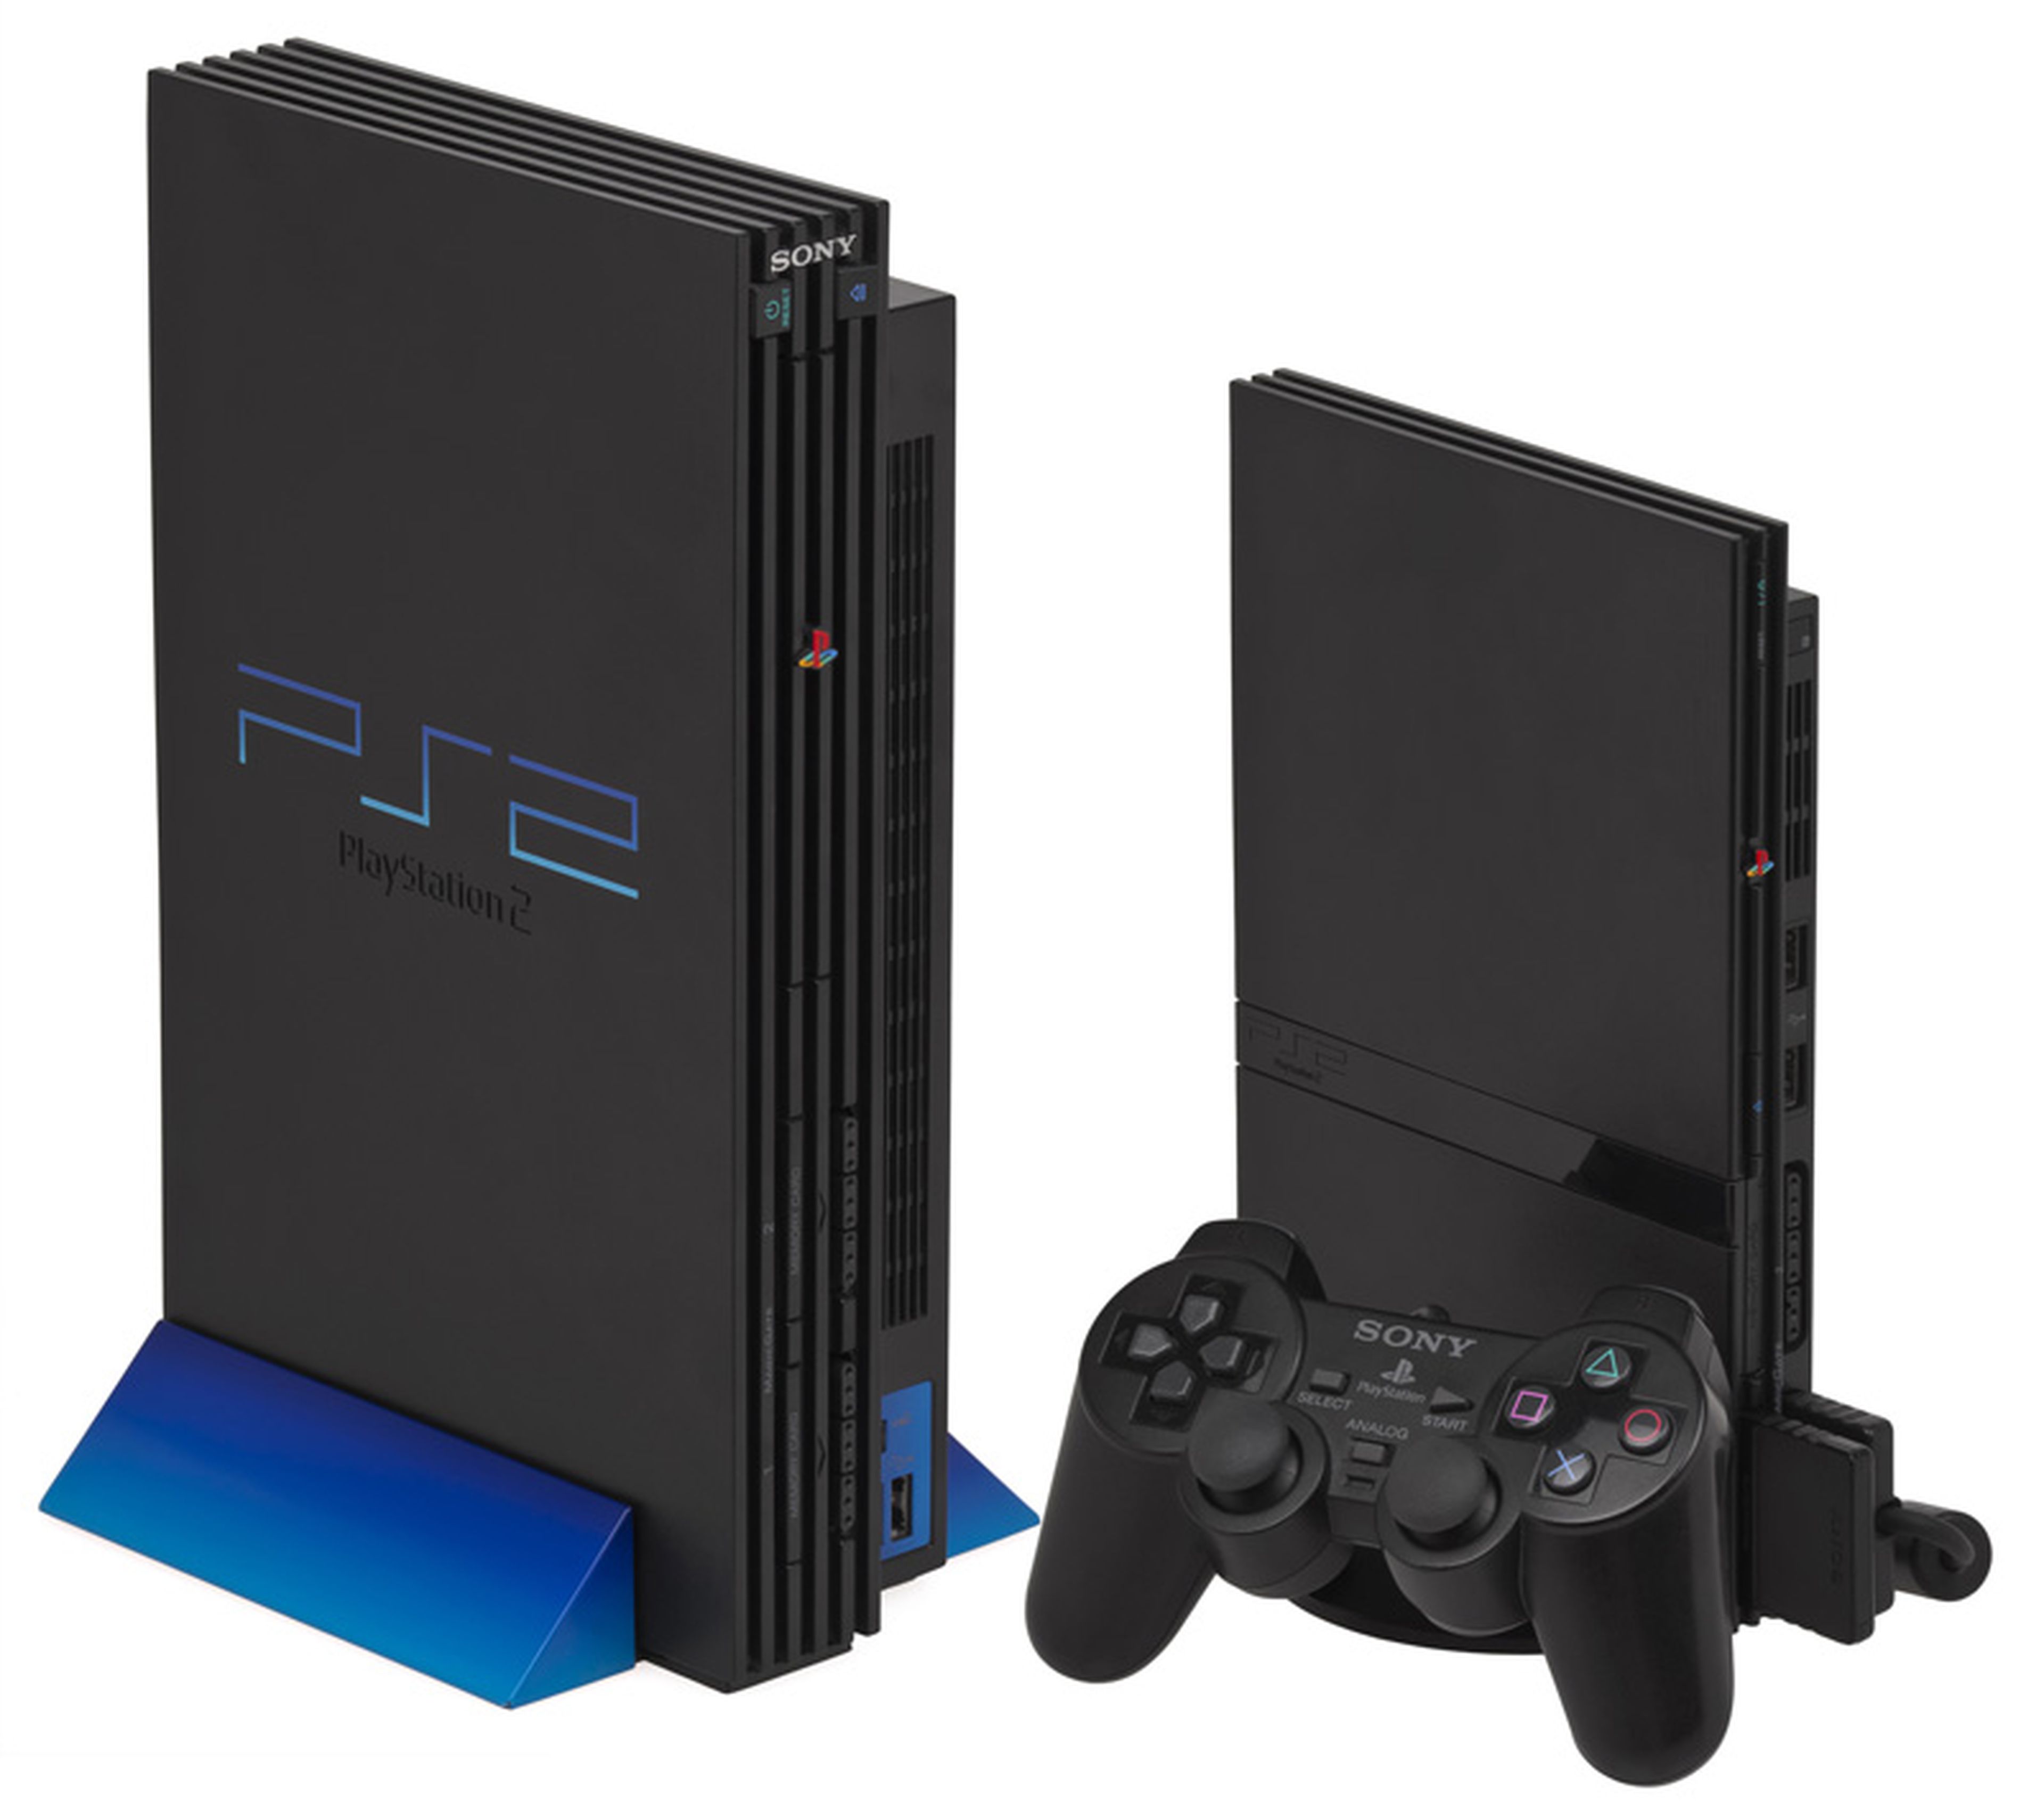 20 hitos de 20 años PlayStation